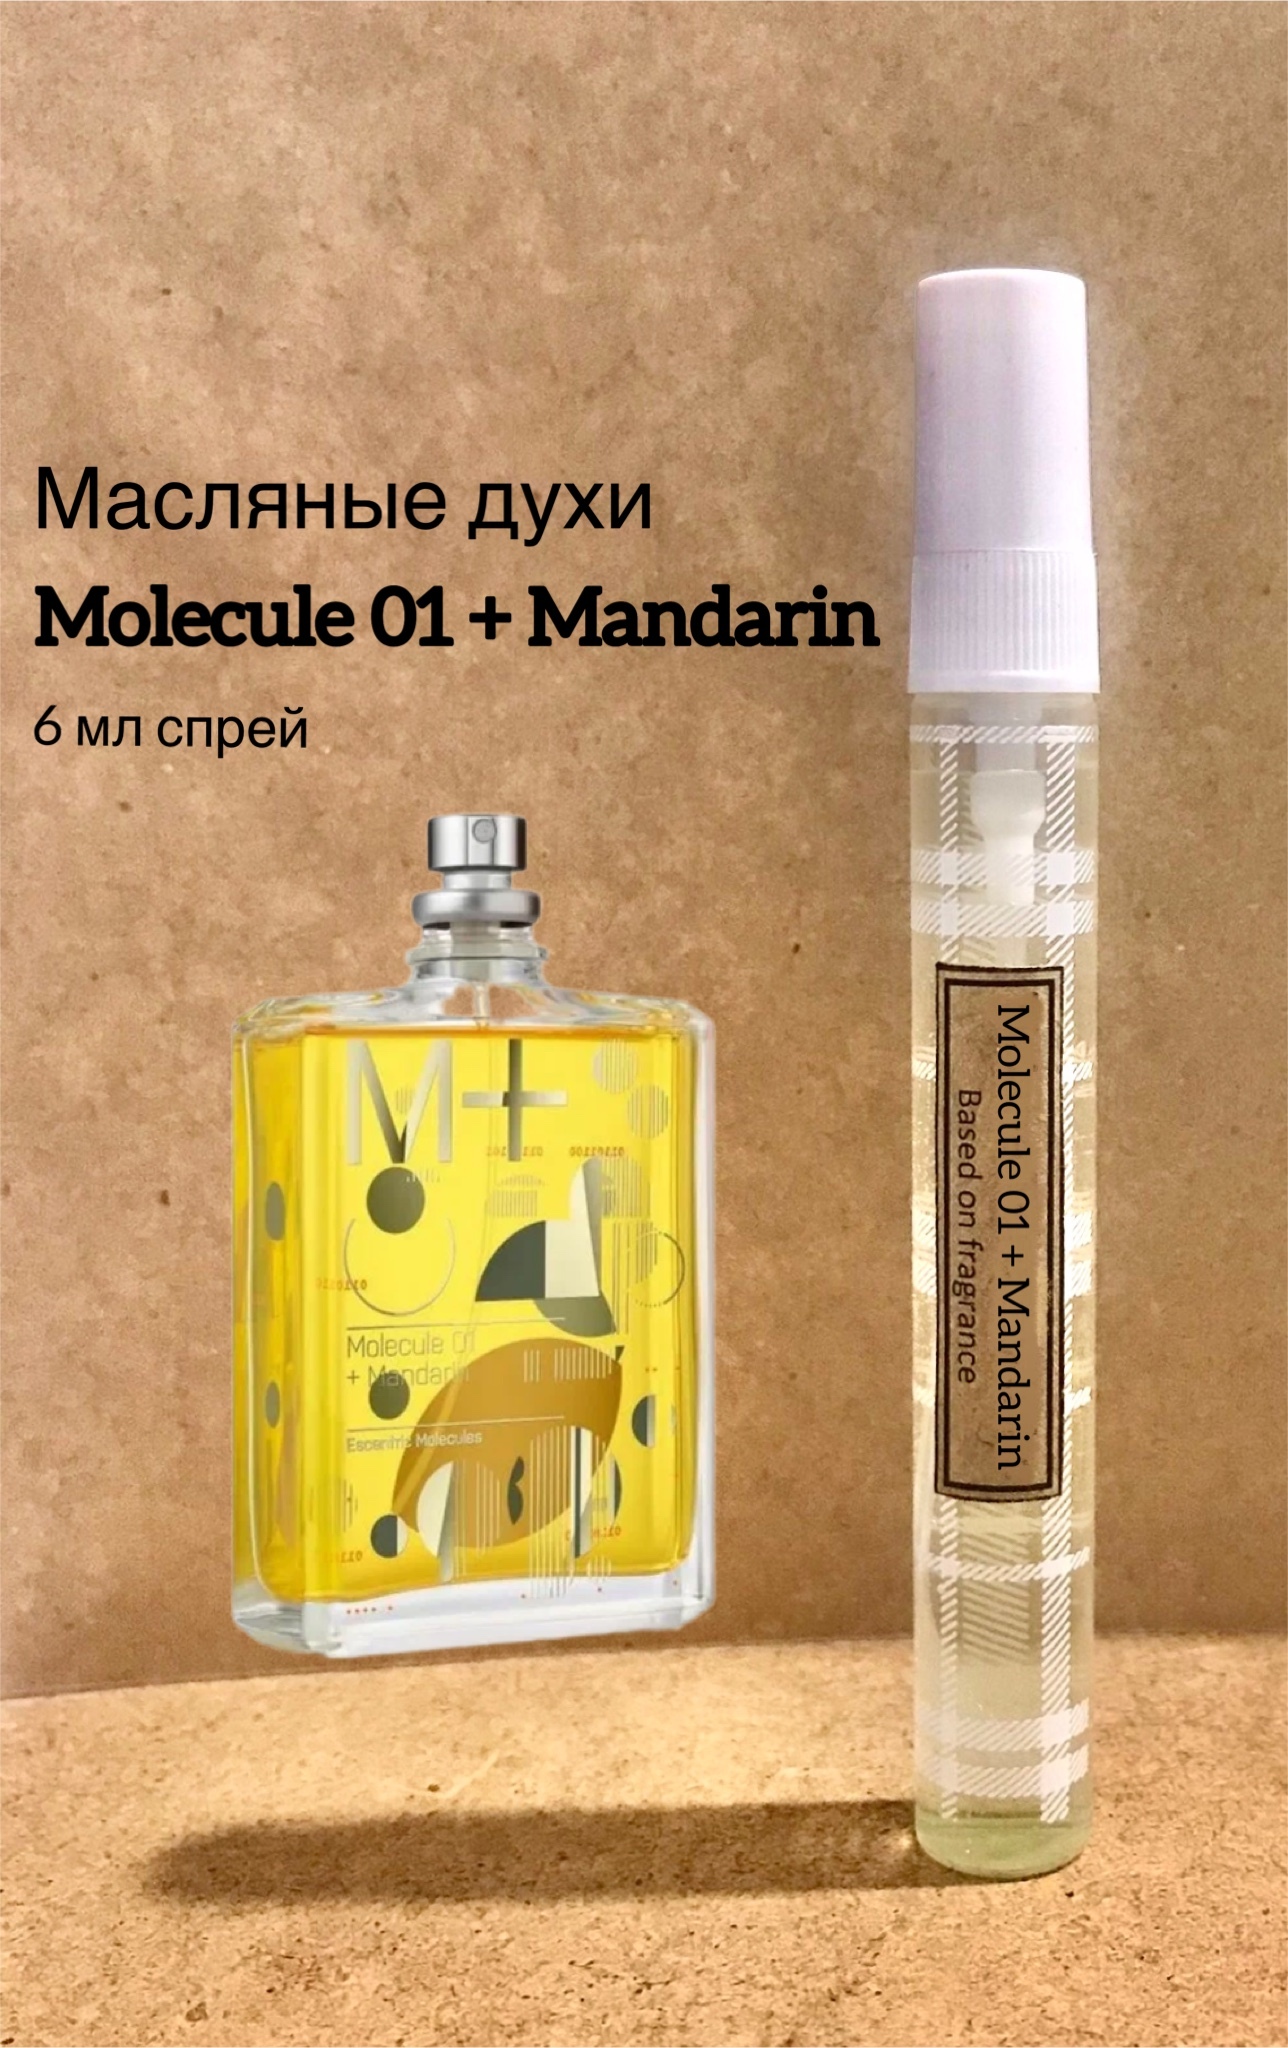 Molecule 01 Mandarin